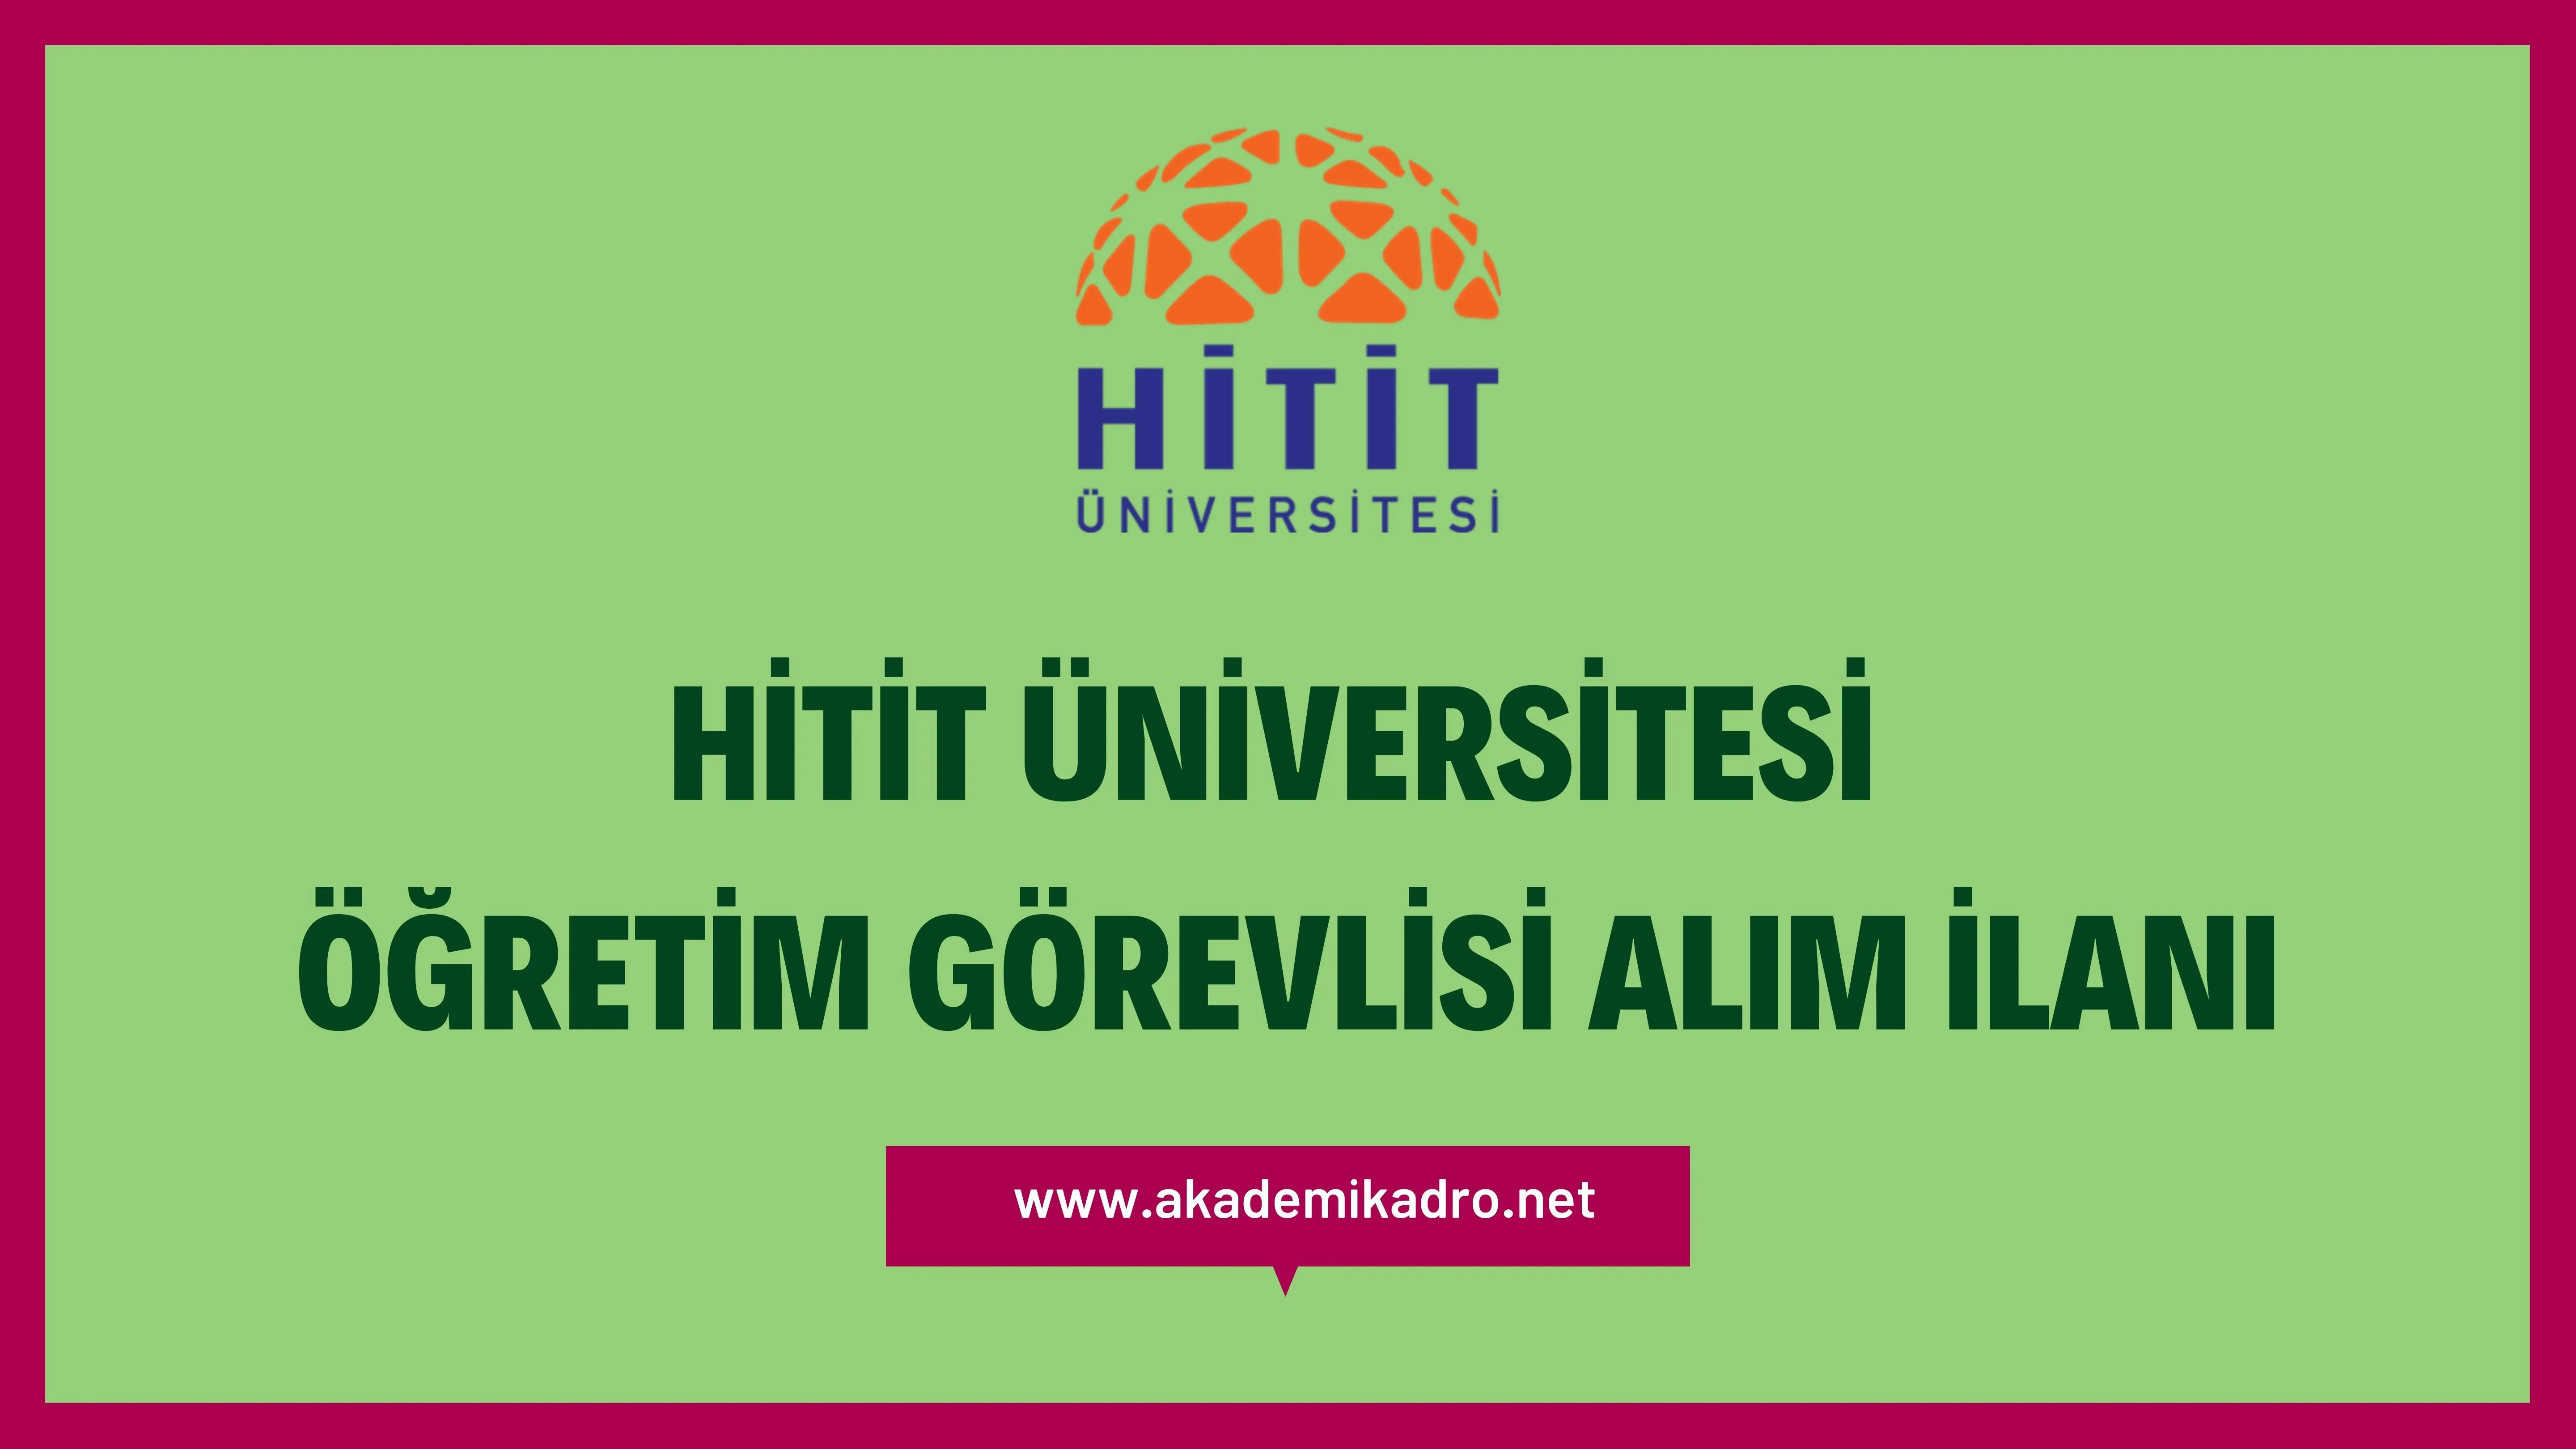 Hitit Üniversitesi 4 Öğretim Görevlisi alacaktır. Son başvuru tarihi 09 Ocak 2022